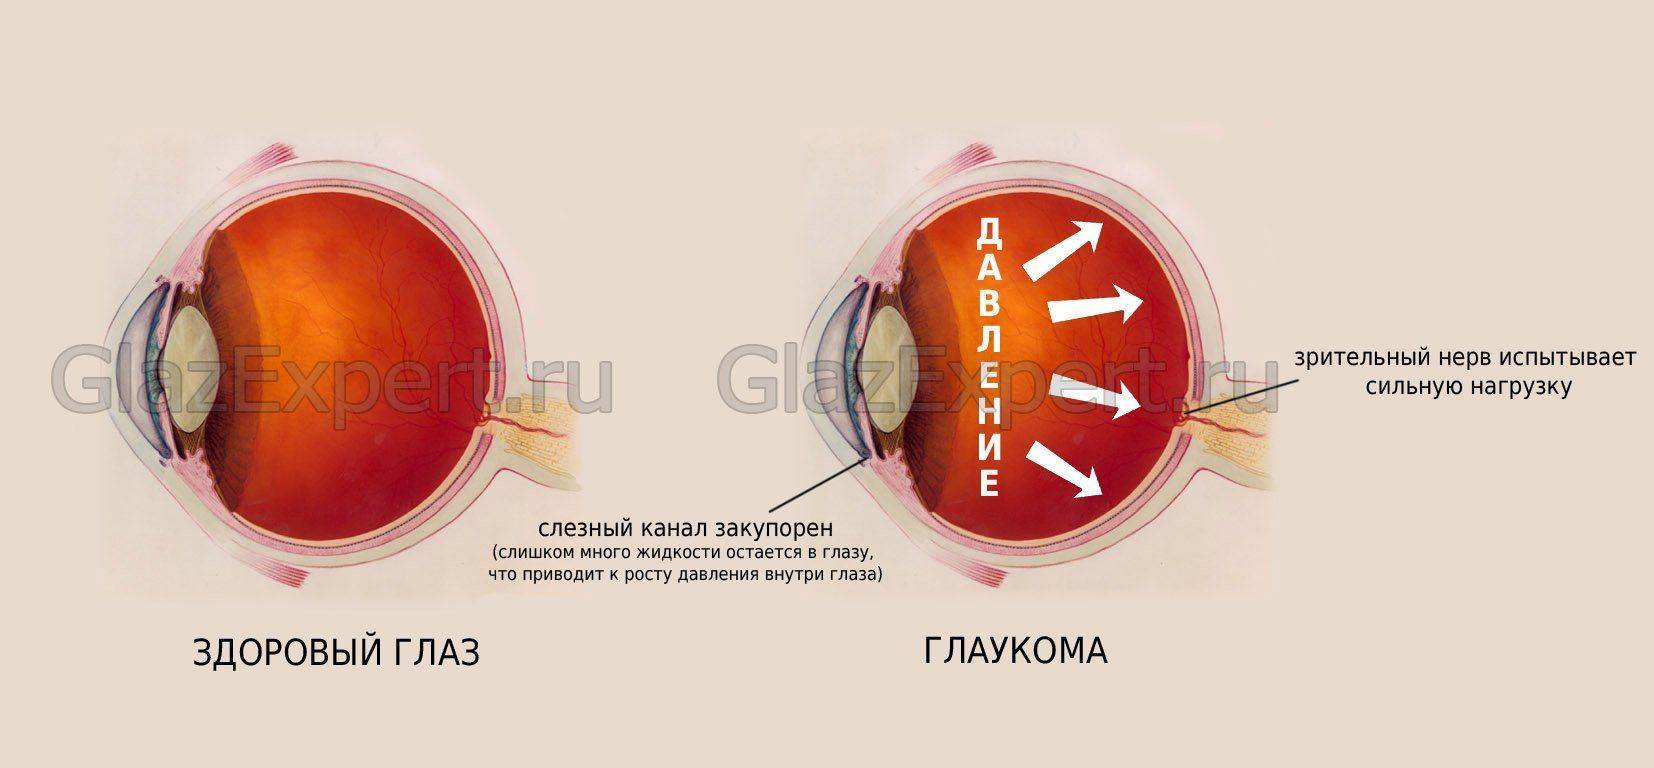 Процесс развития глаукомы